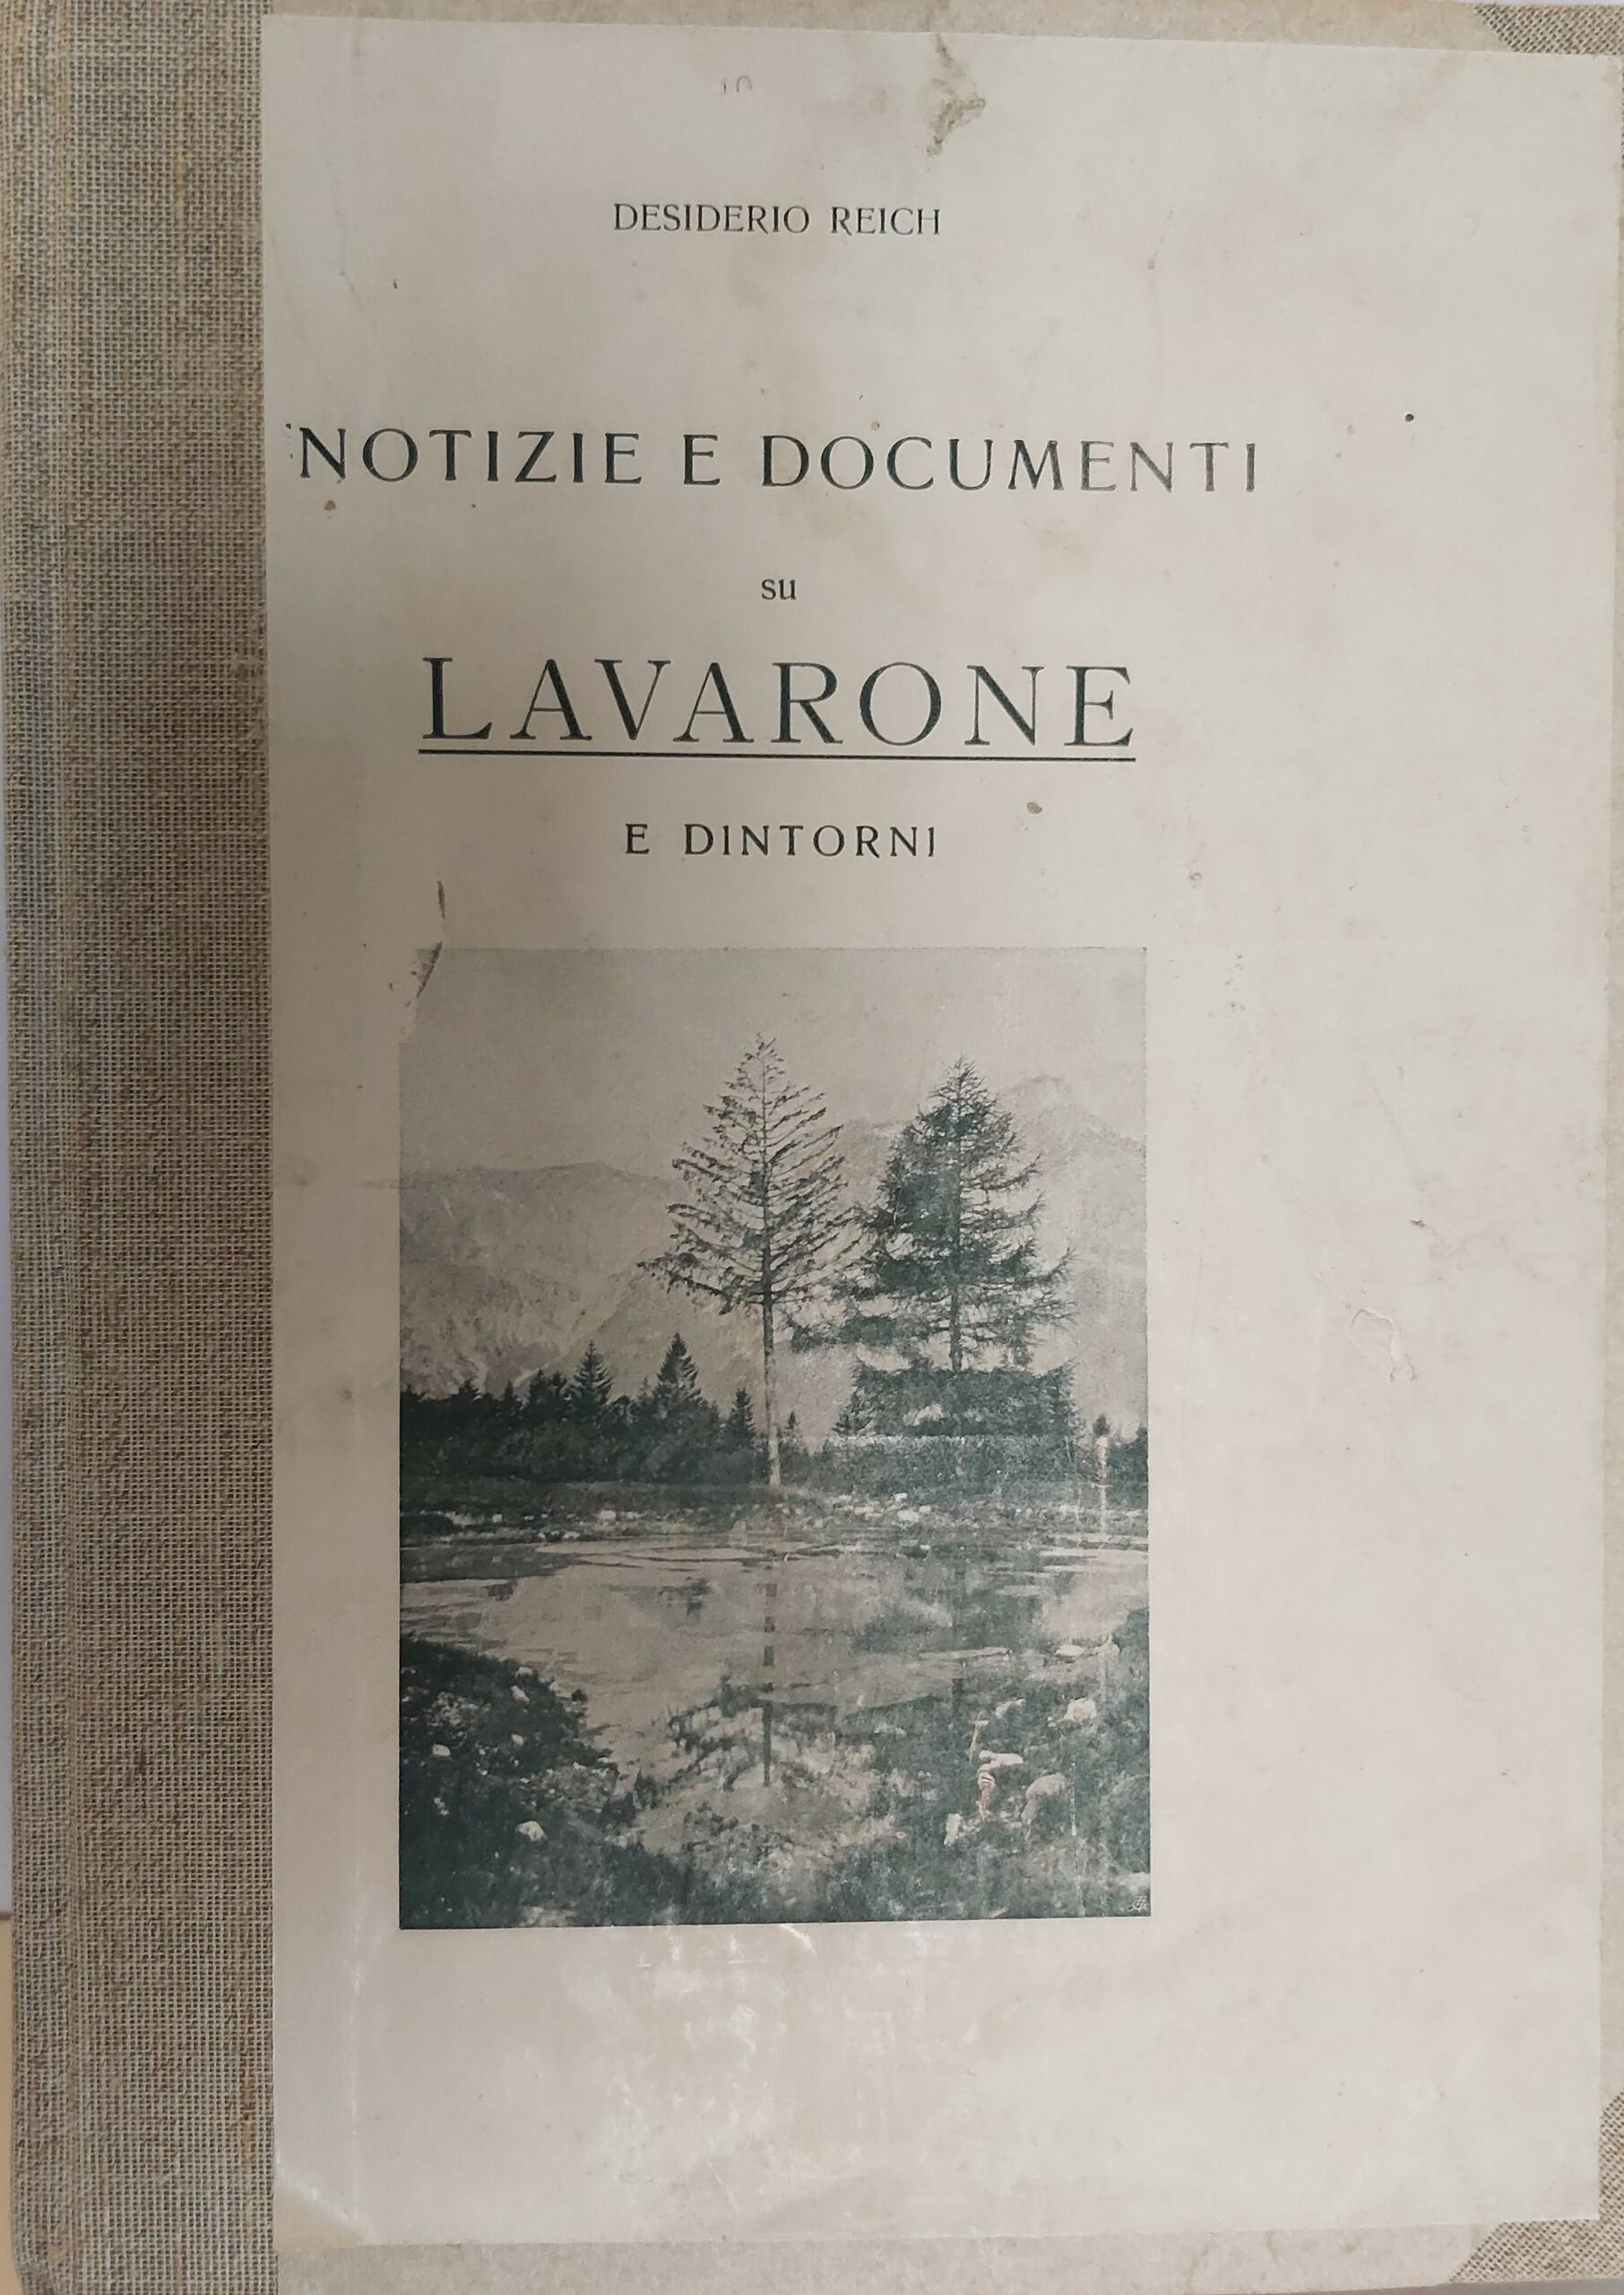 LOC17-361 Lavarone